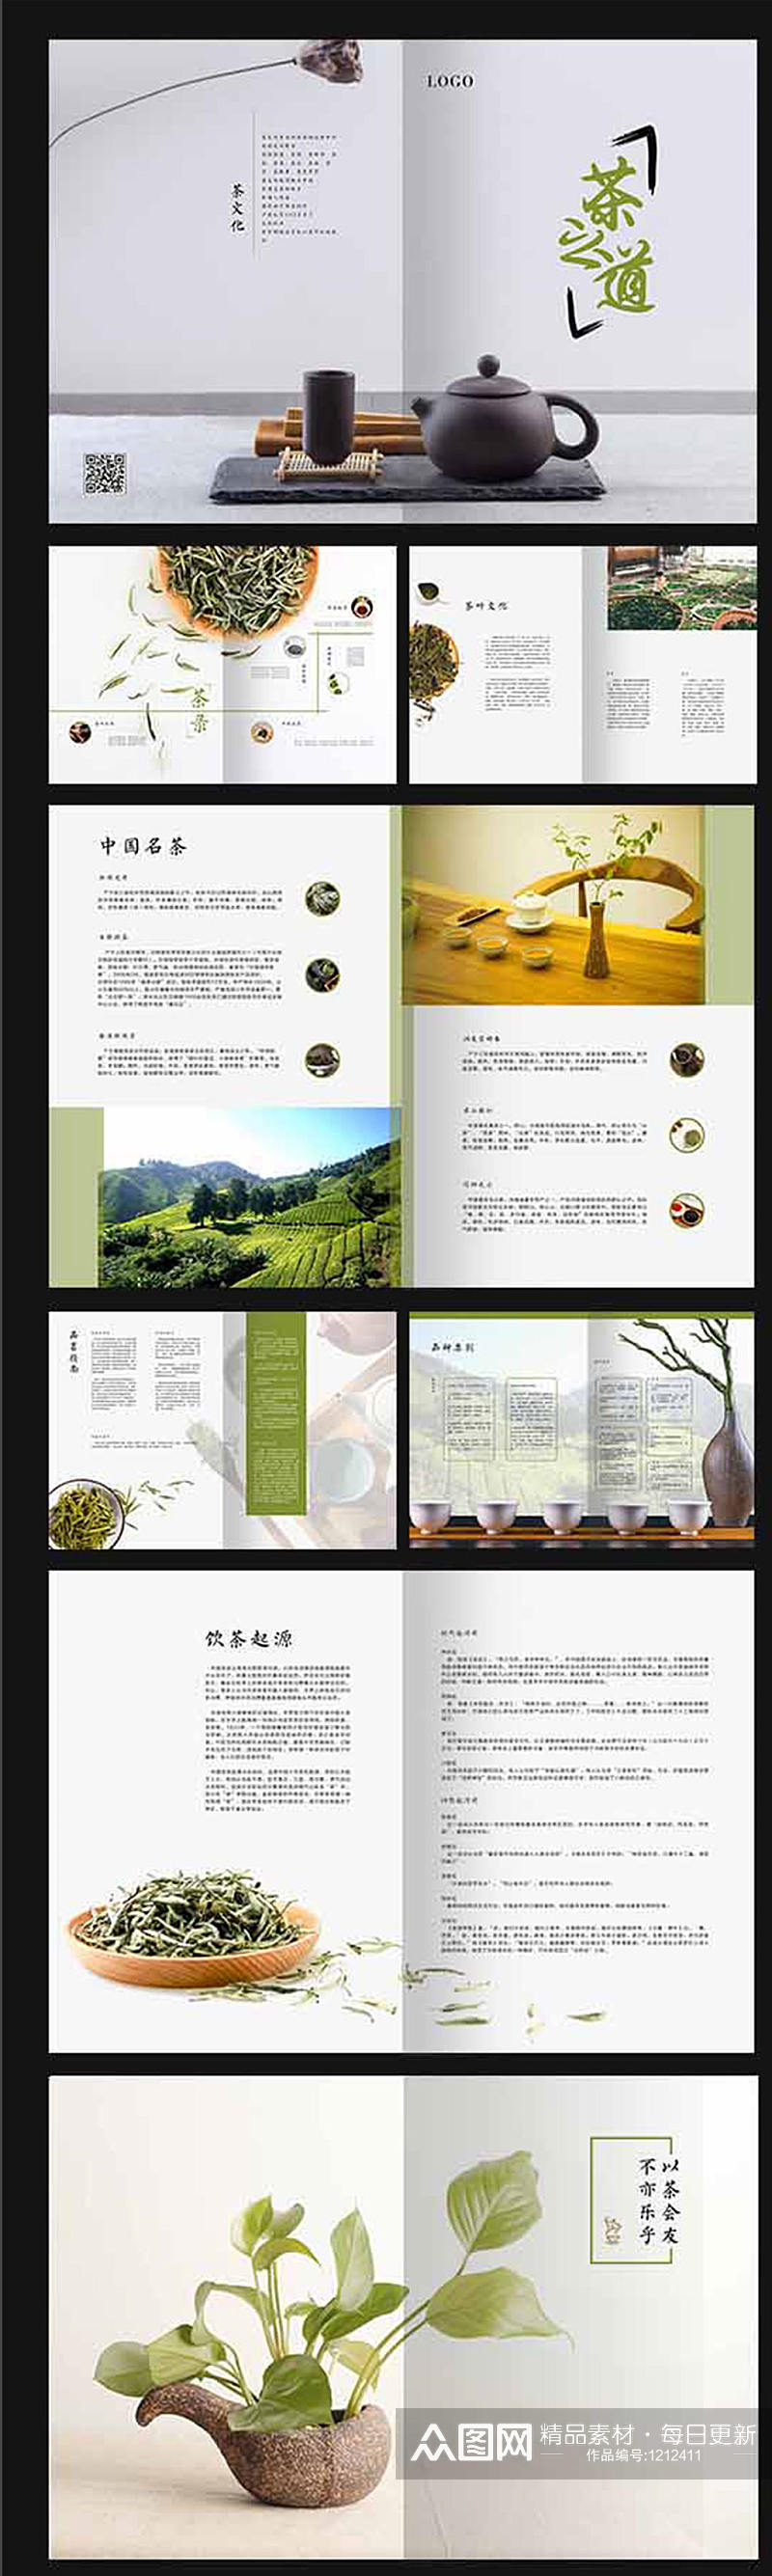 创意淡雅中国风简洁茶画册素材